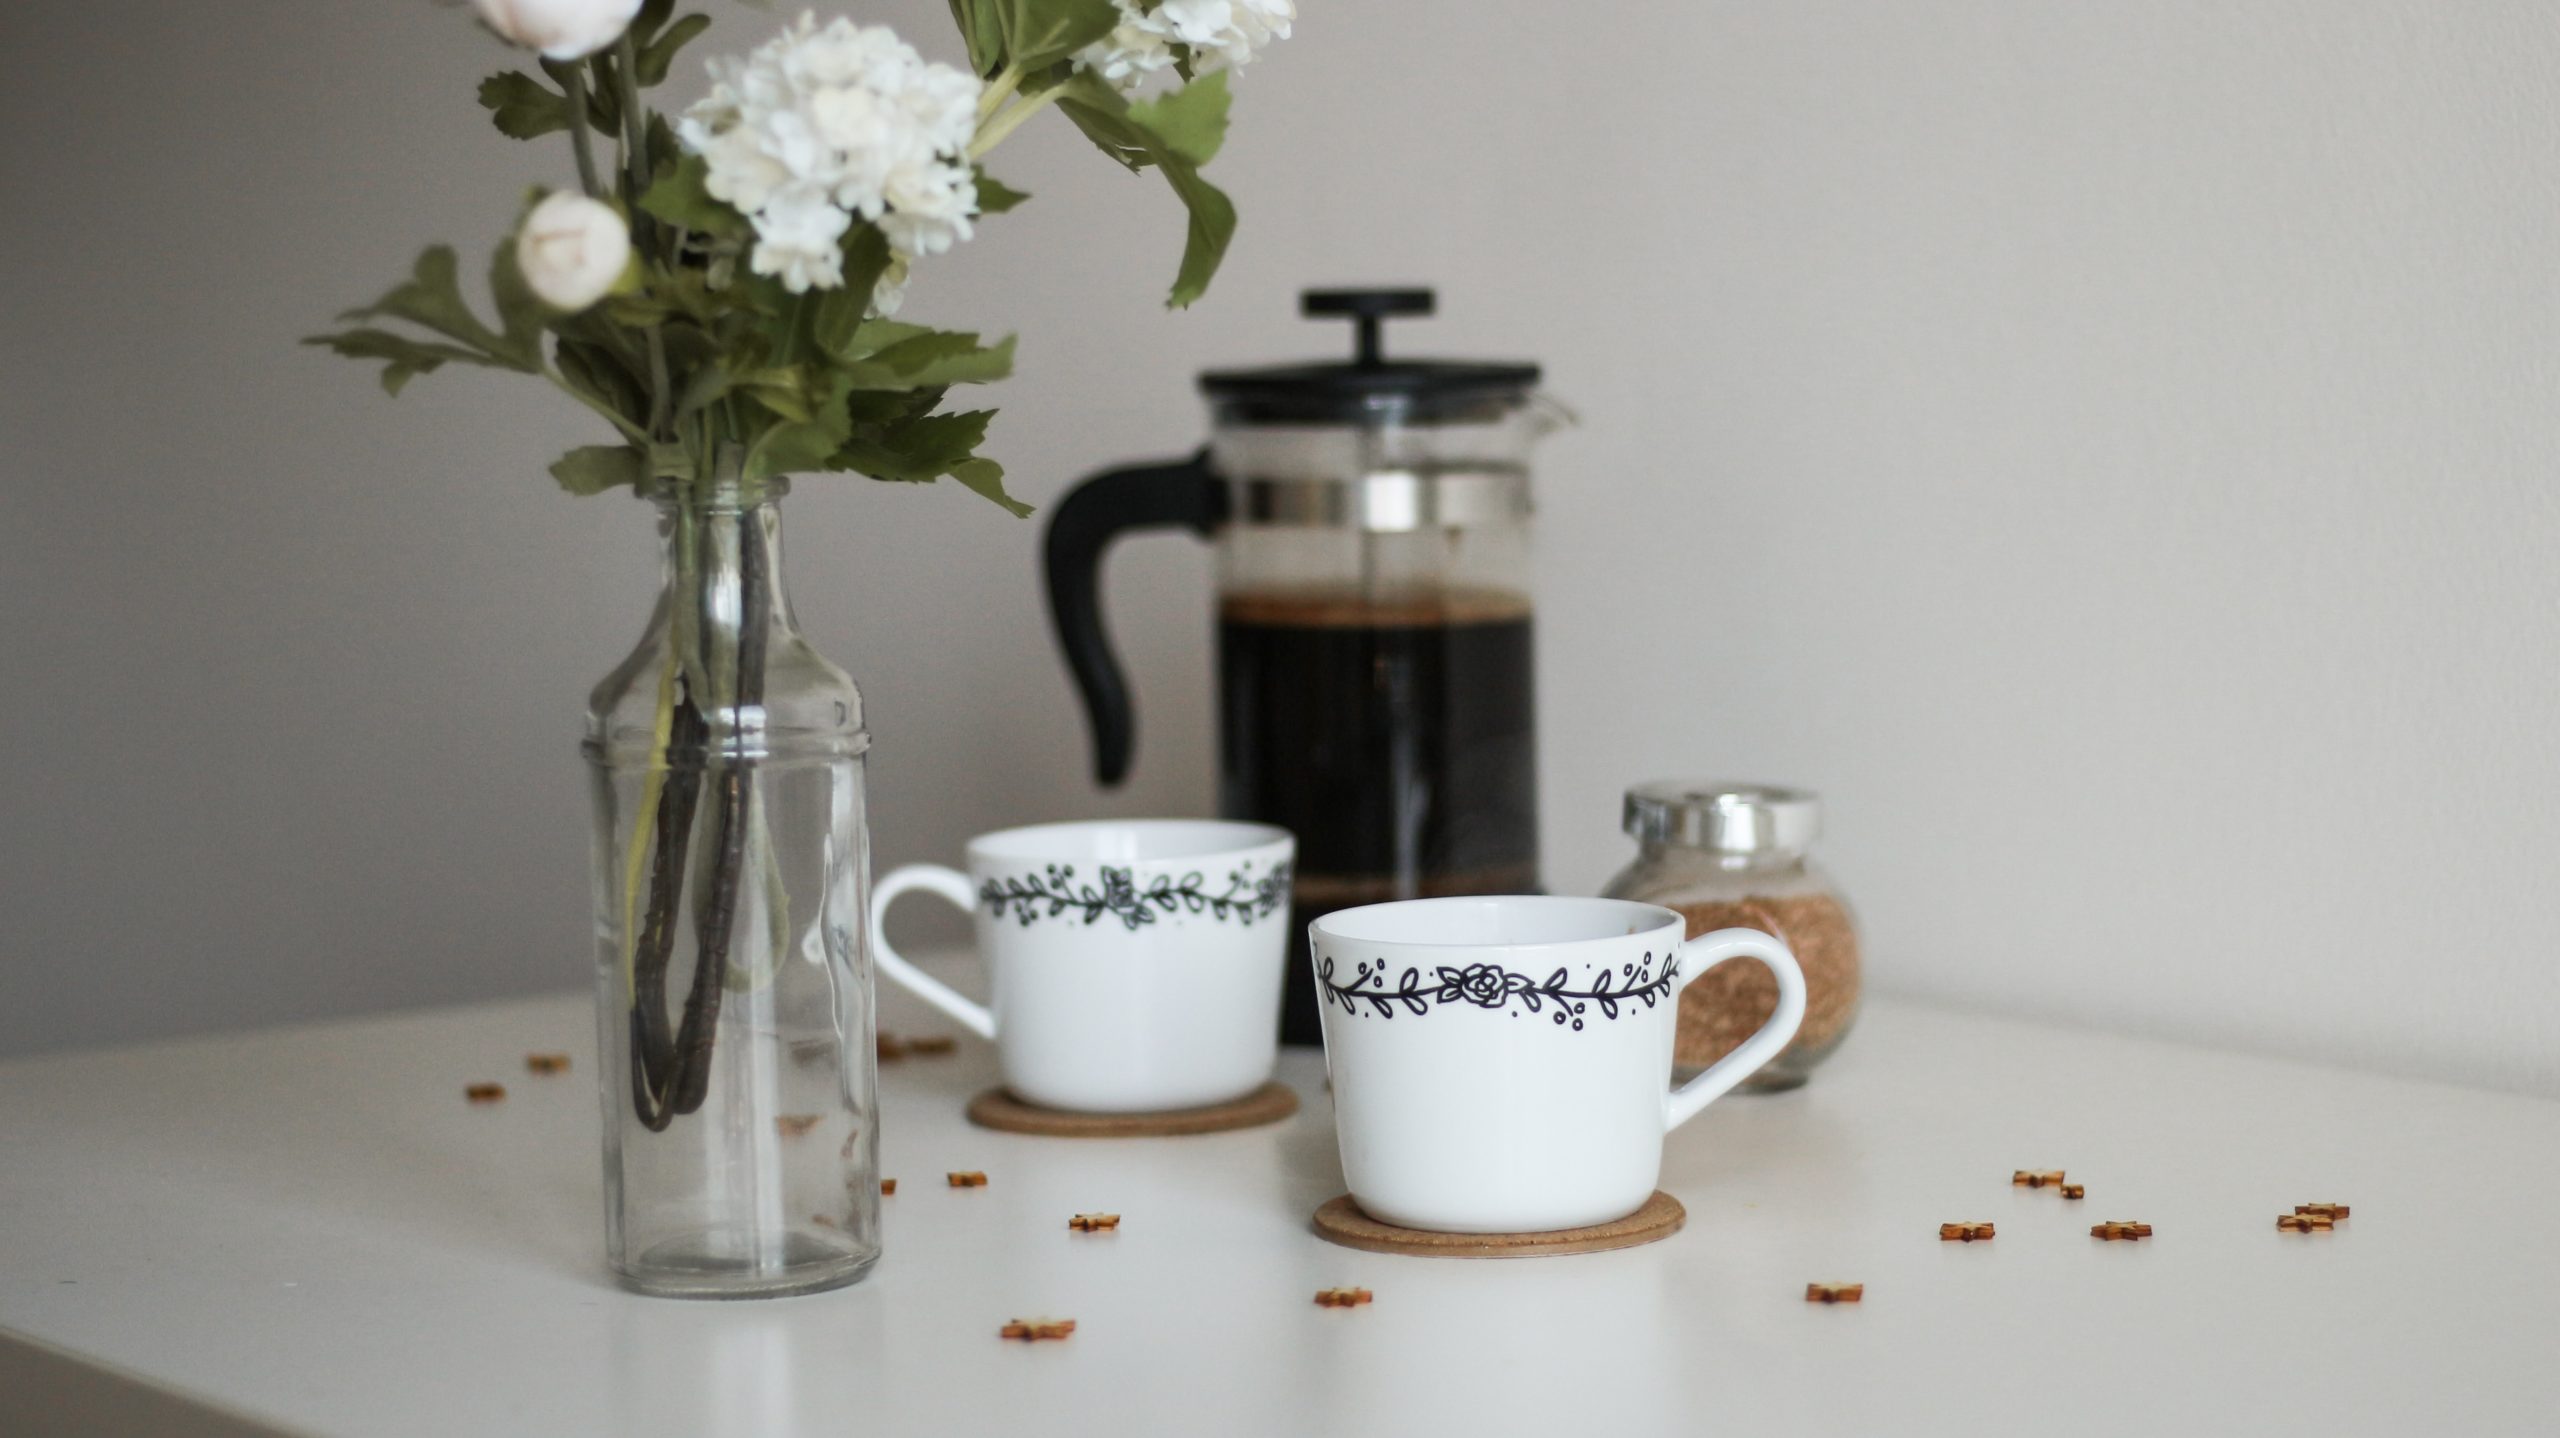 káva - tereza ruba AaNuSbrzsc8 unsplash scaled - Zelený čaj a káva – ktorý nápoj je lepší pre zdravie